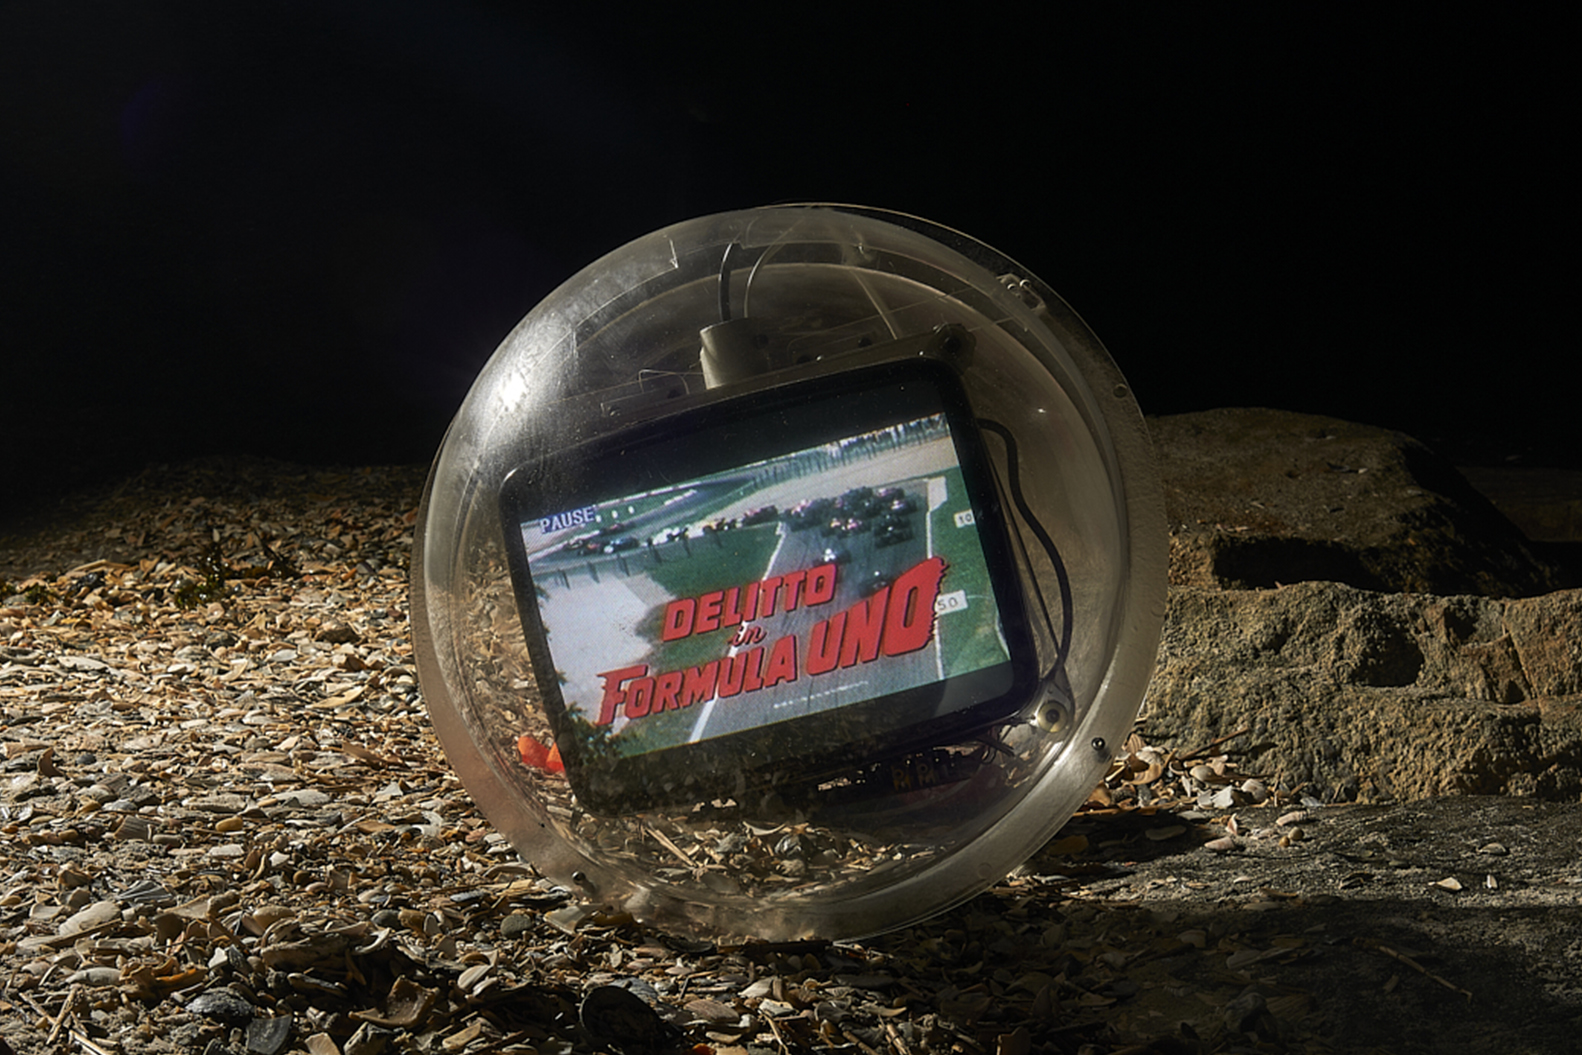 a television in a sphere. Carlo Sampietro